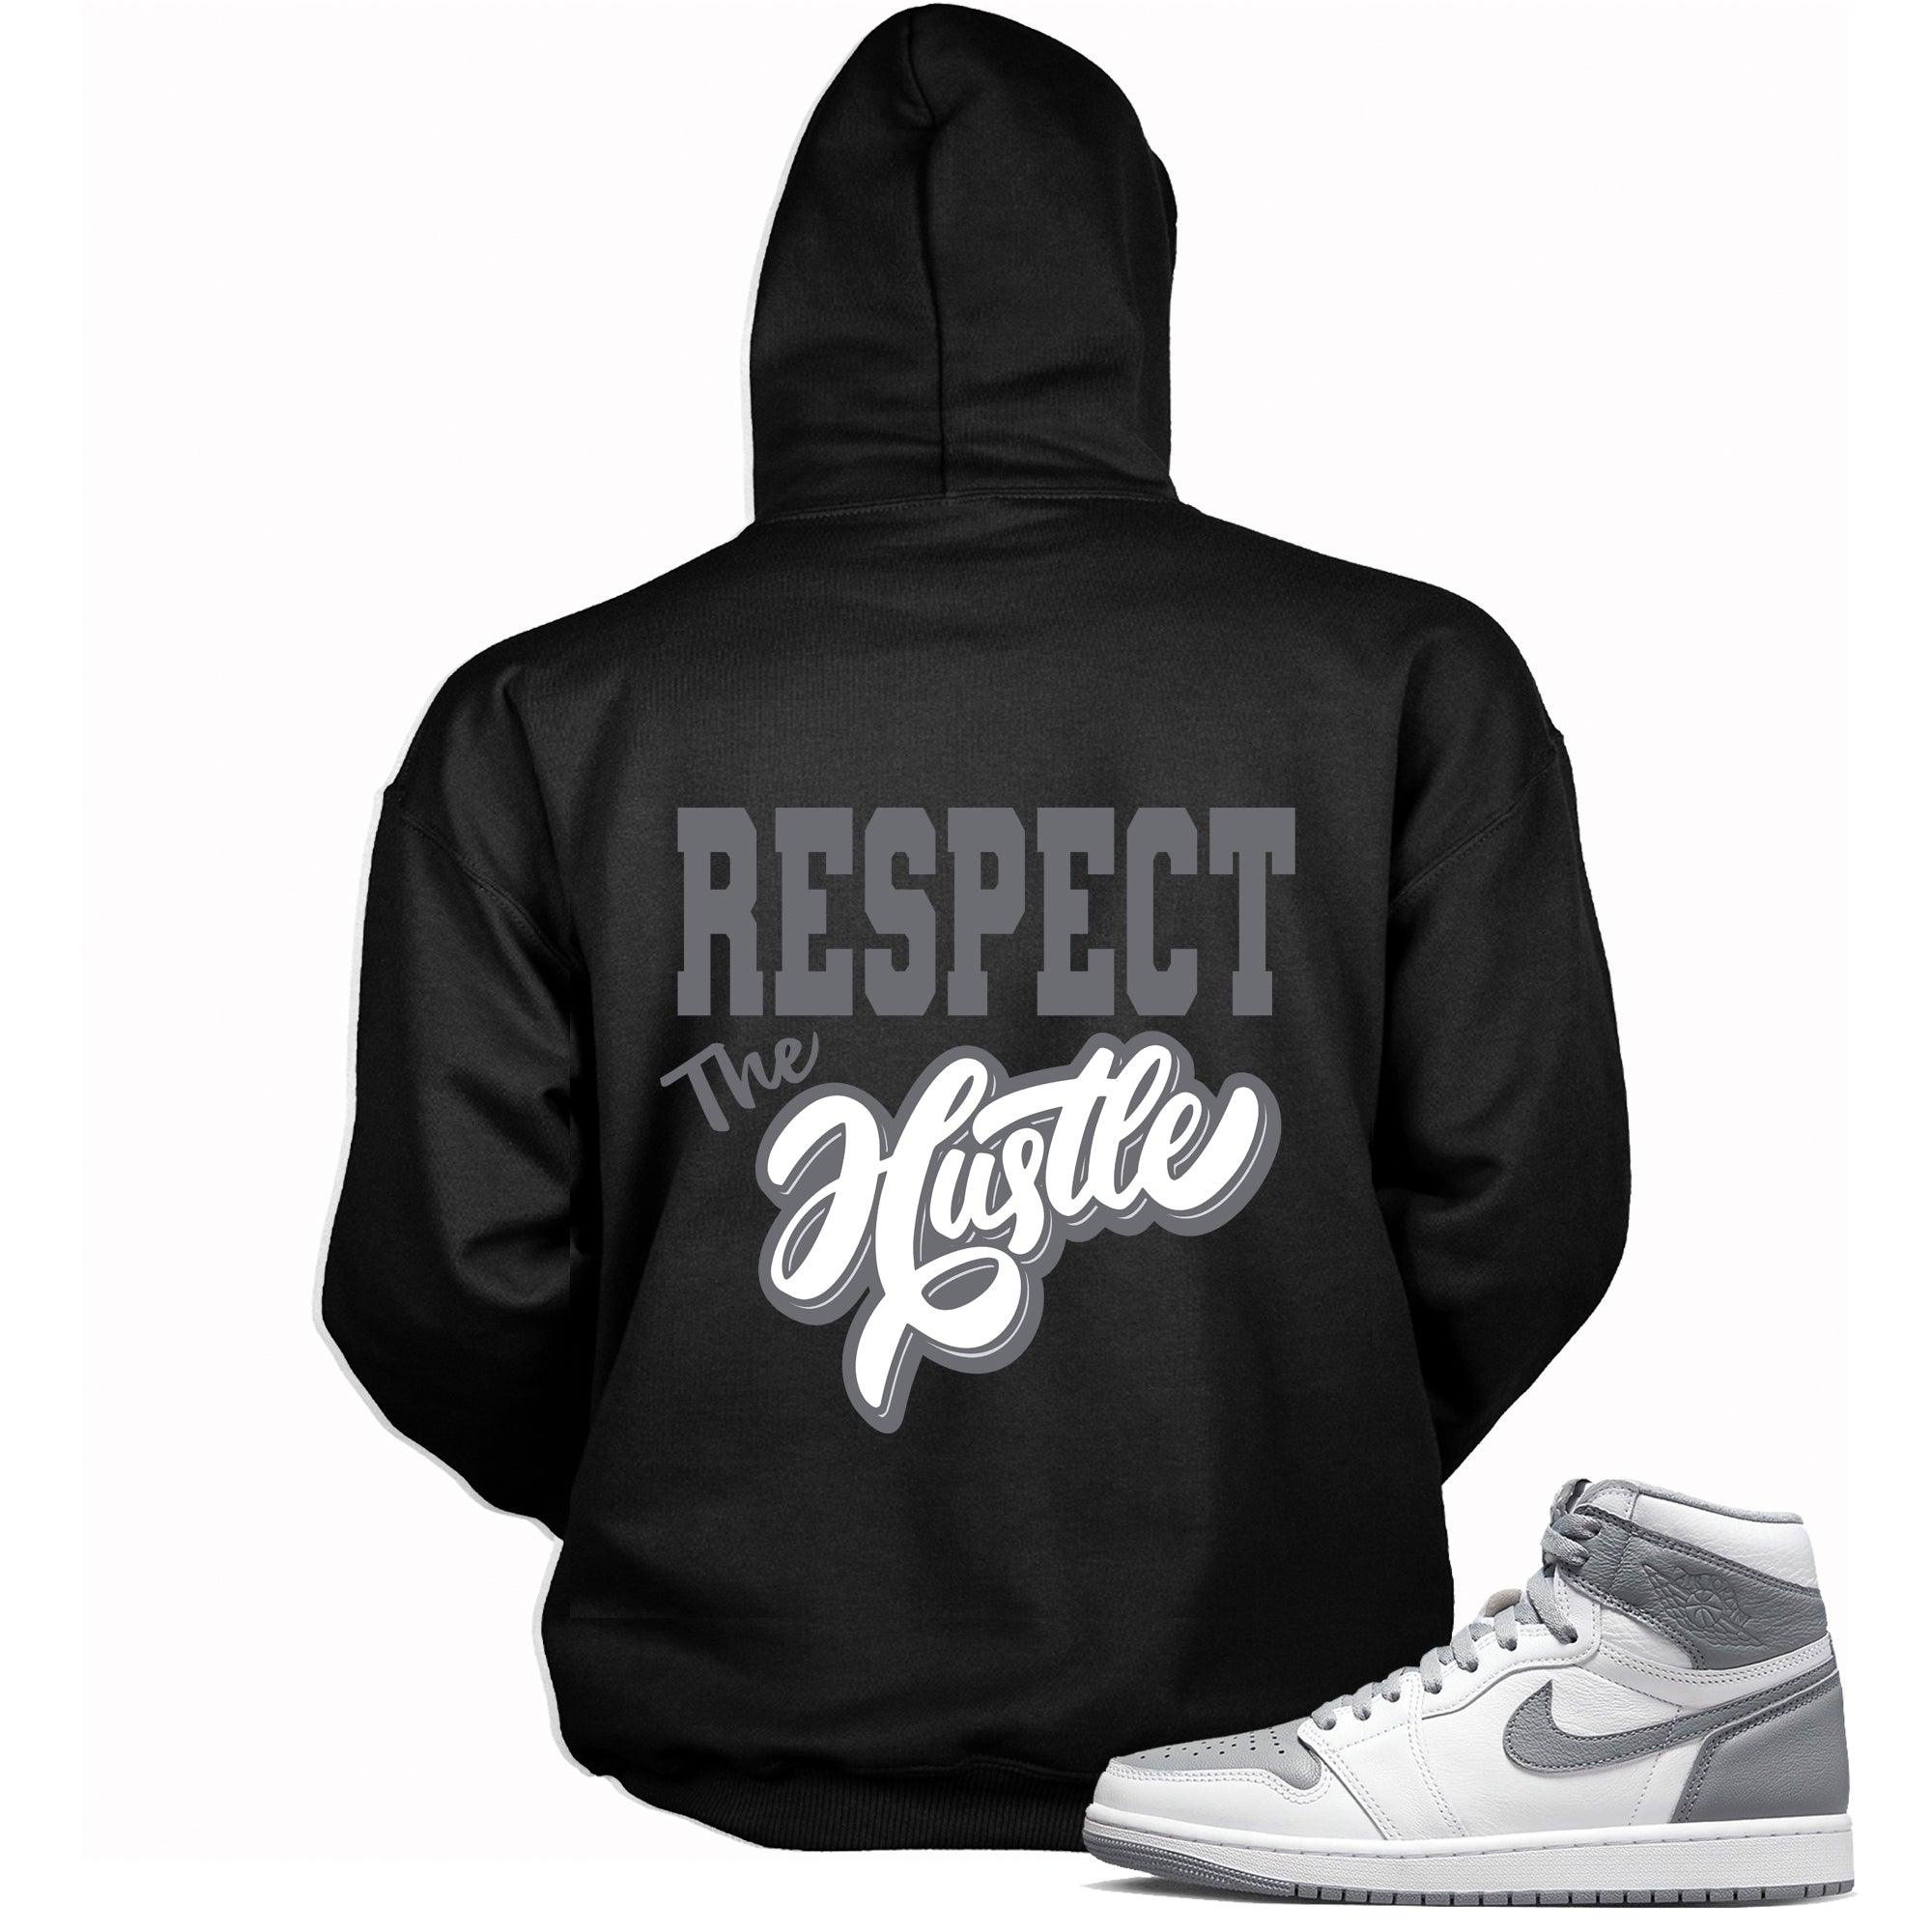 Respect the Hustle Sneaker Hoodie for Jordan 1s photo